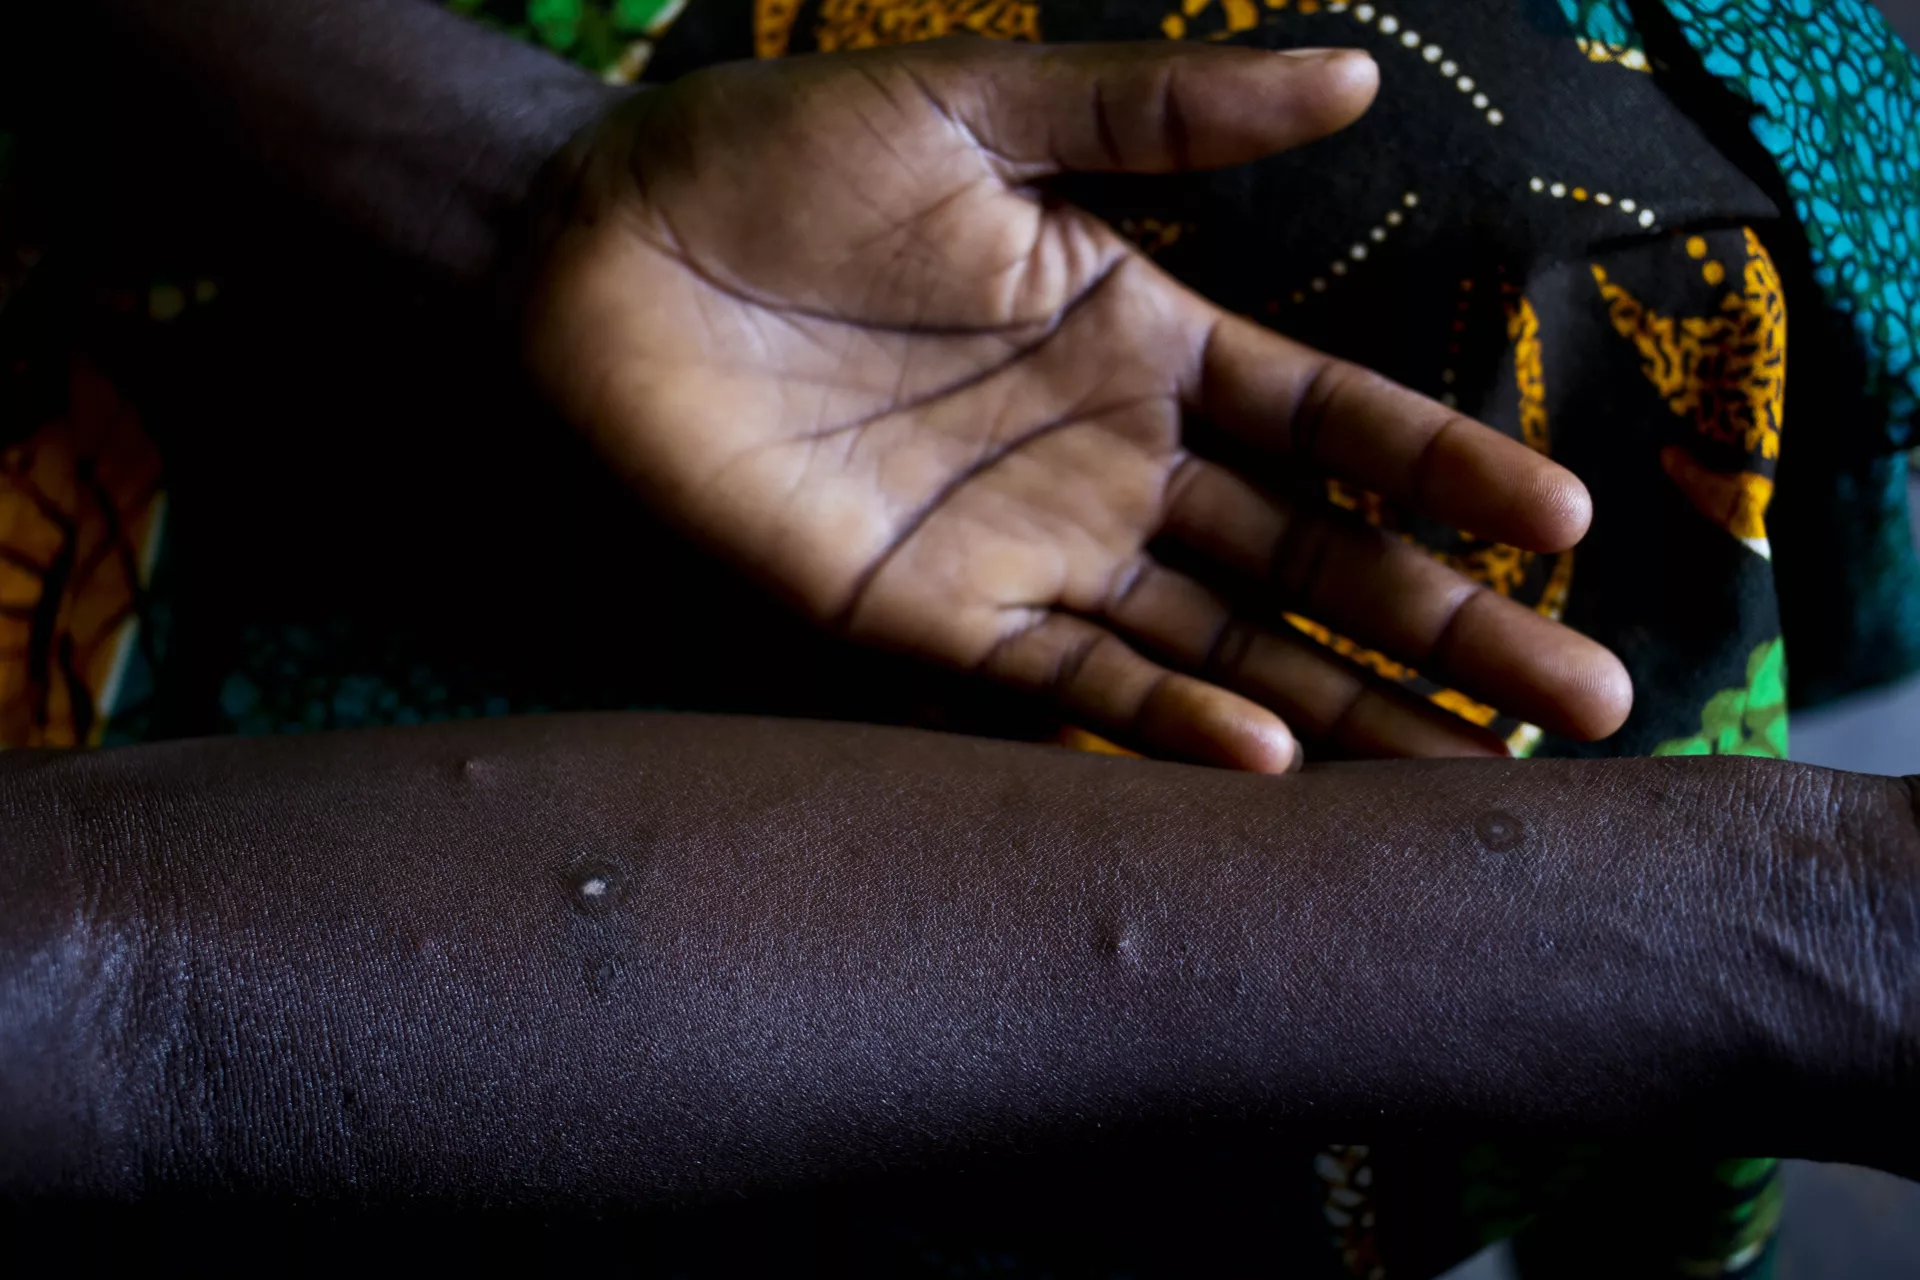 جنوب السودان. مراهقة تكشف ندوبا على يدها حينما كانت طفلة مجندة.